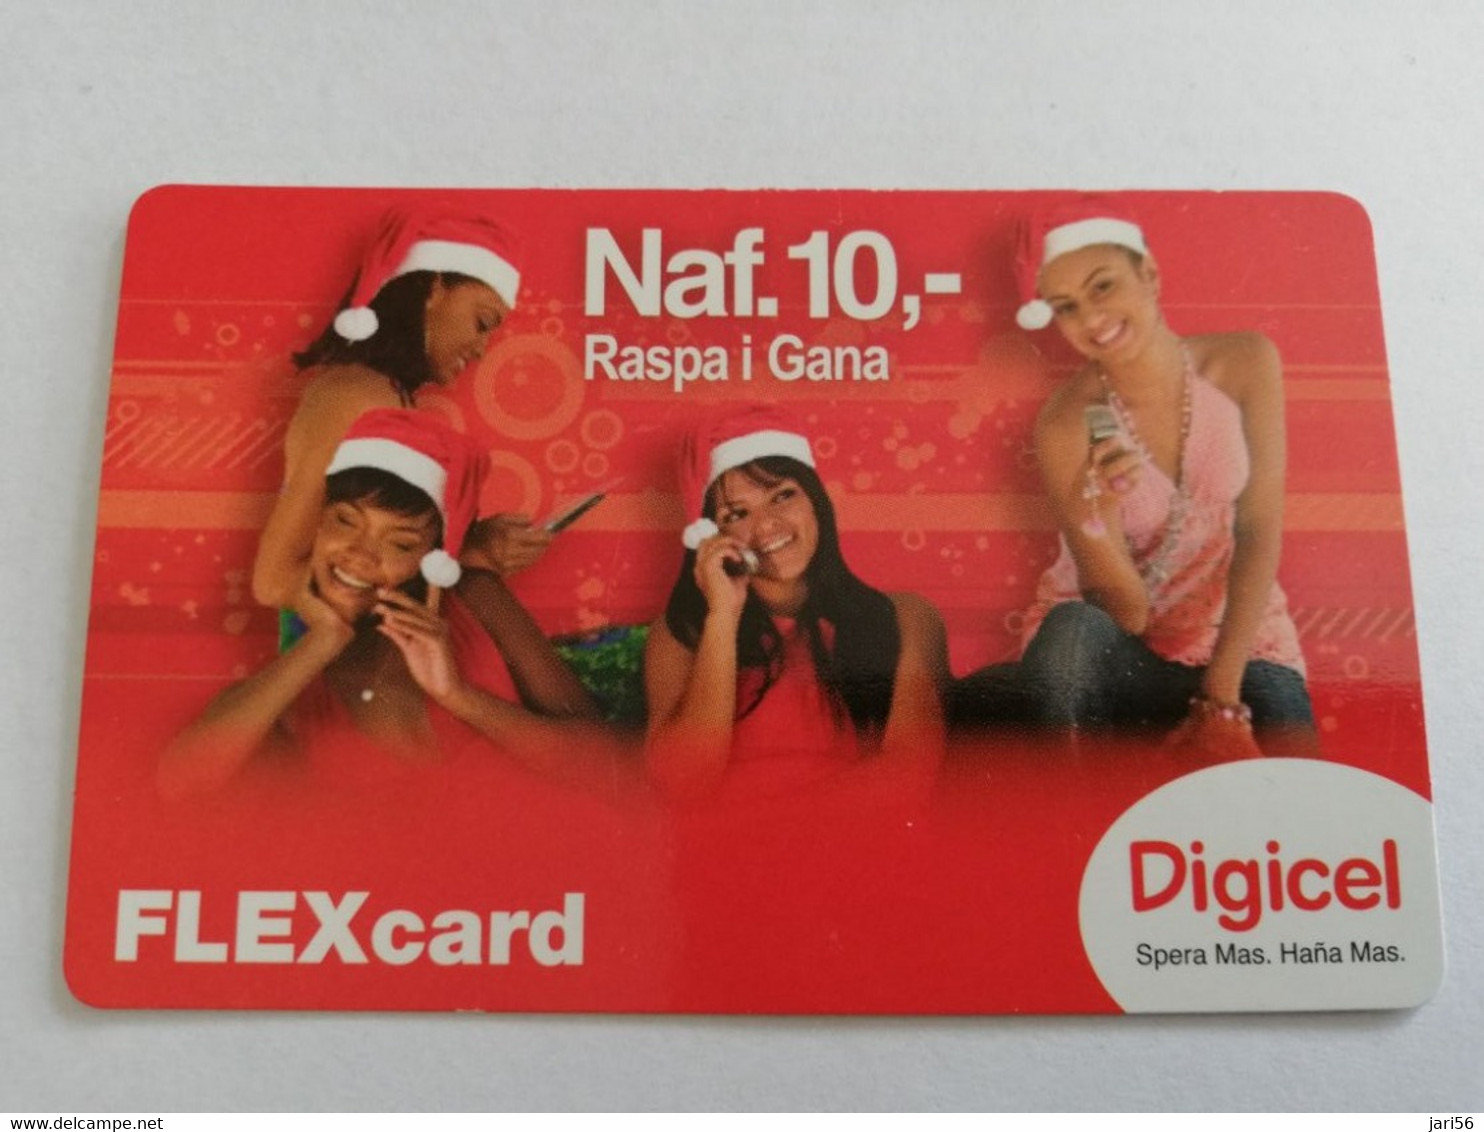 CURACAO  DIGICEL FLEX CARD  NAF 10,-  CHRISTMAS LADYS WITH PHON   DATE 05/09/2009   VERY FINE USED CARD     ** 5293AA** - Antilles (Neérlandaises)